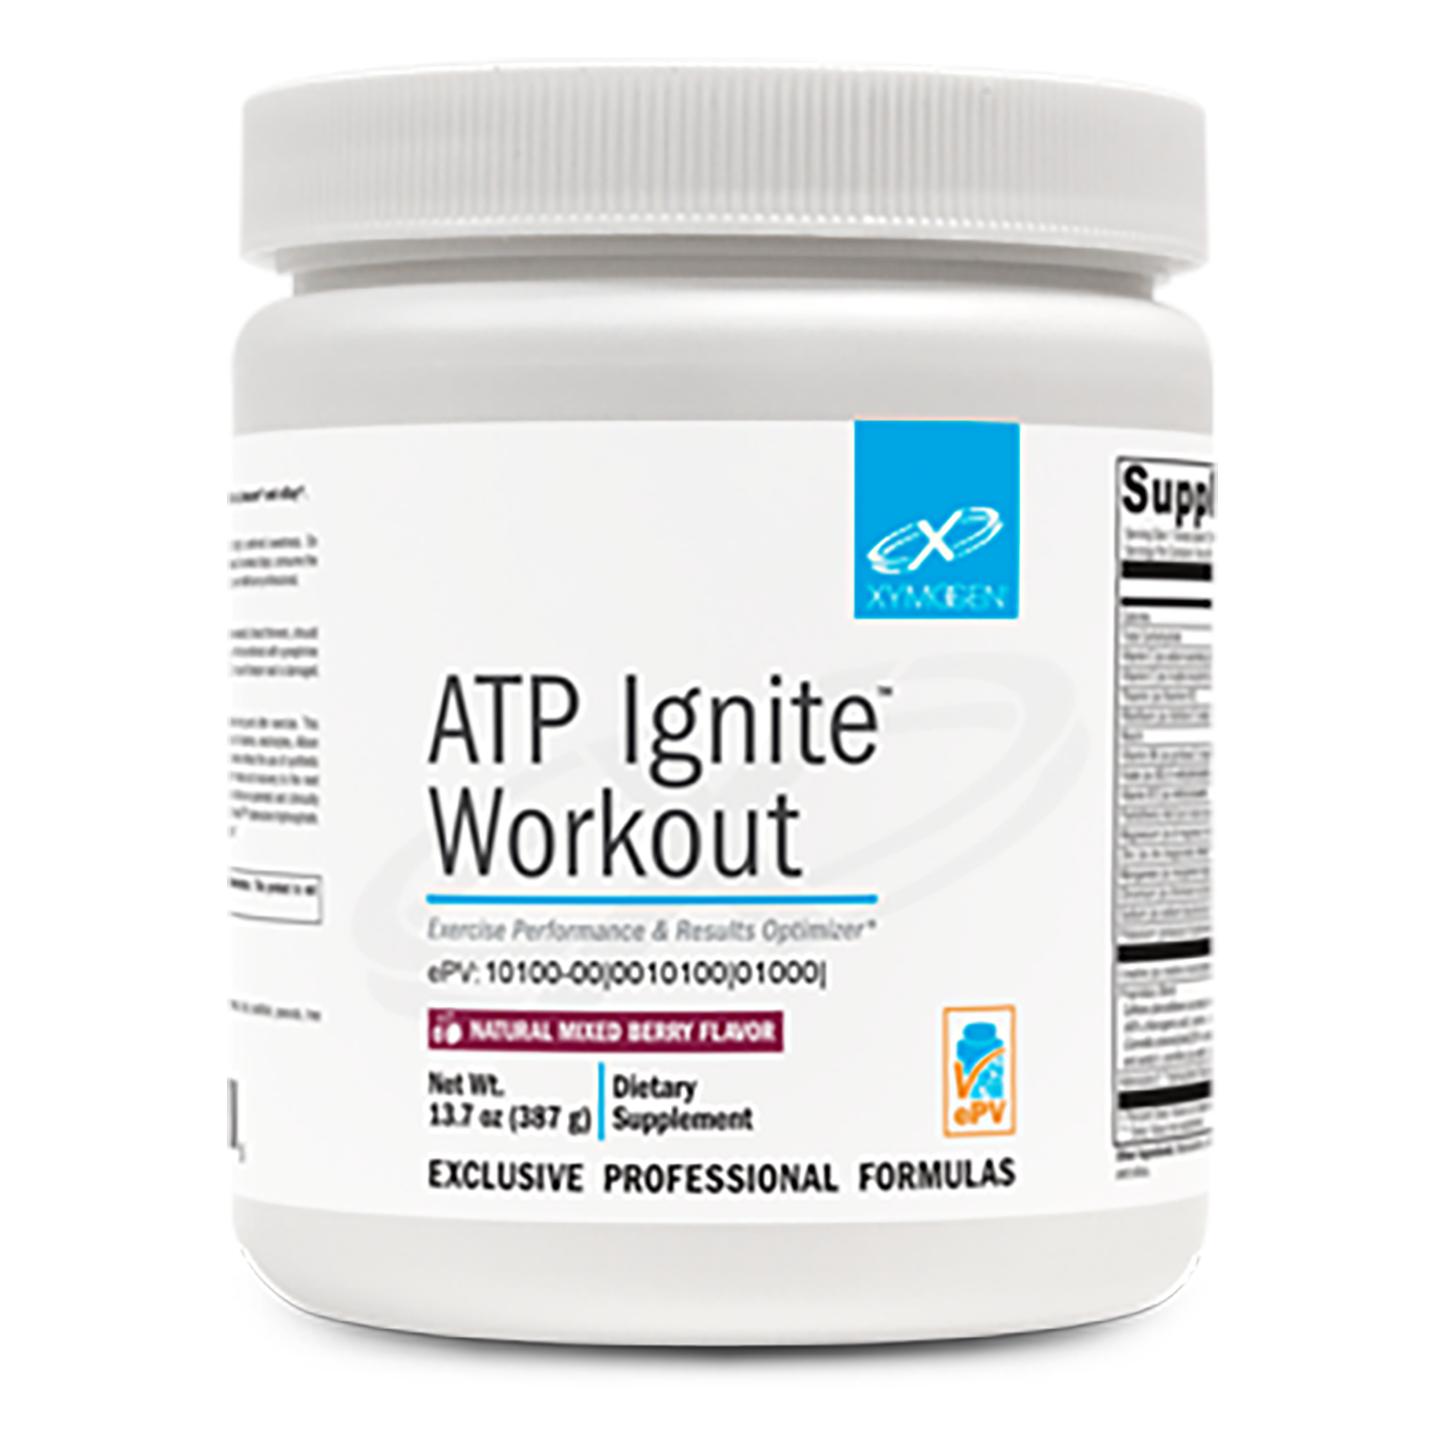 ATP Ignite Workout powder